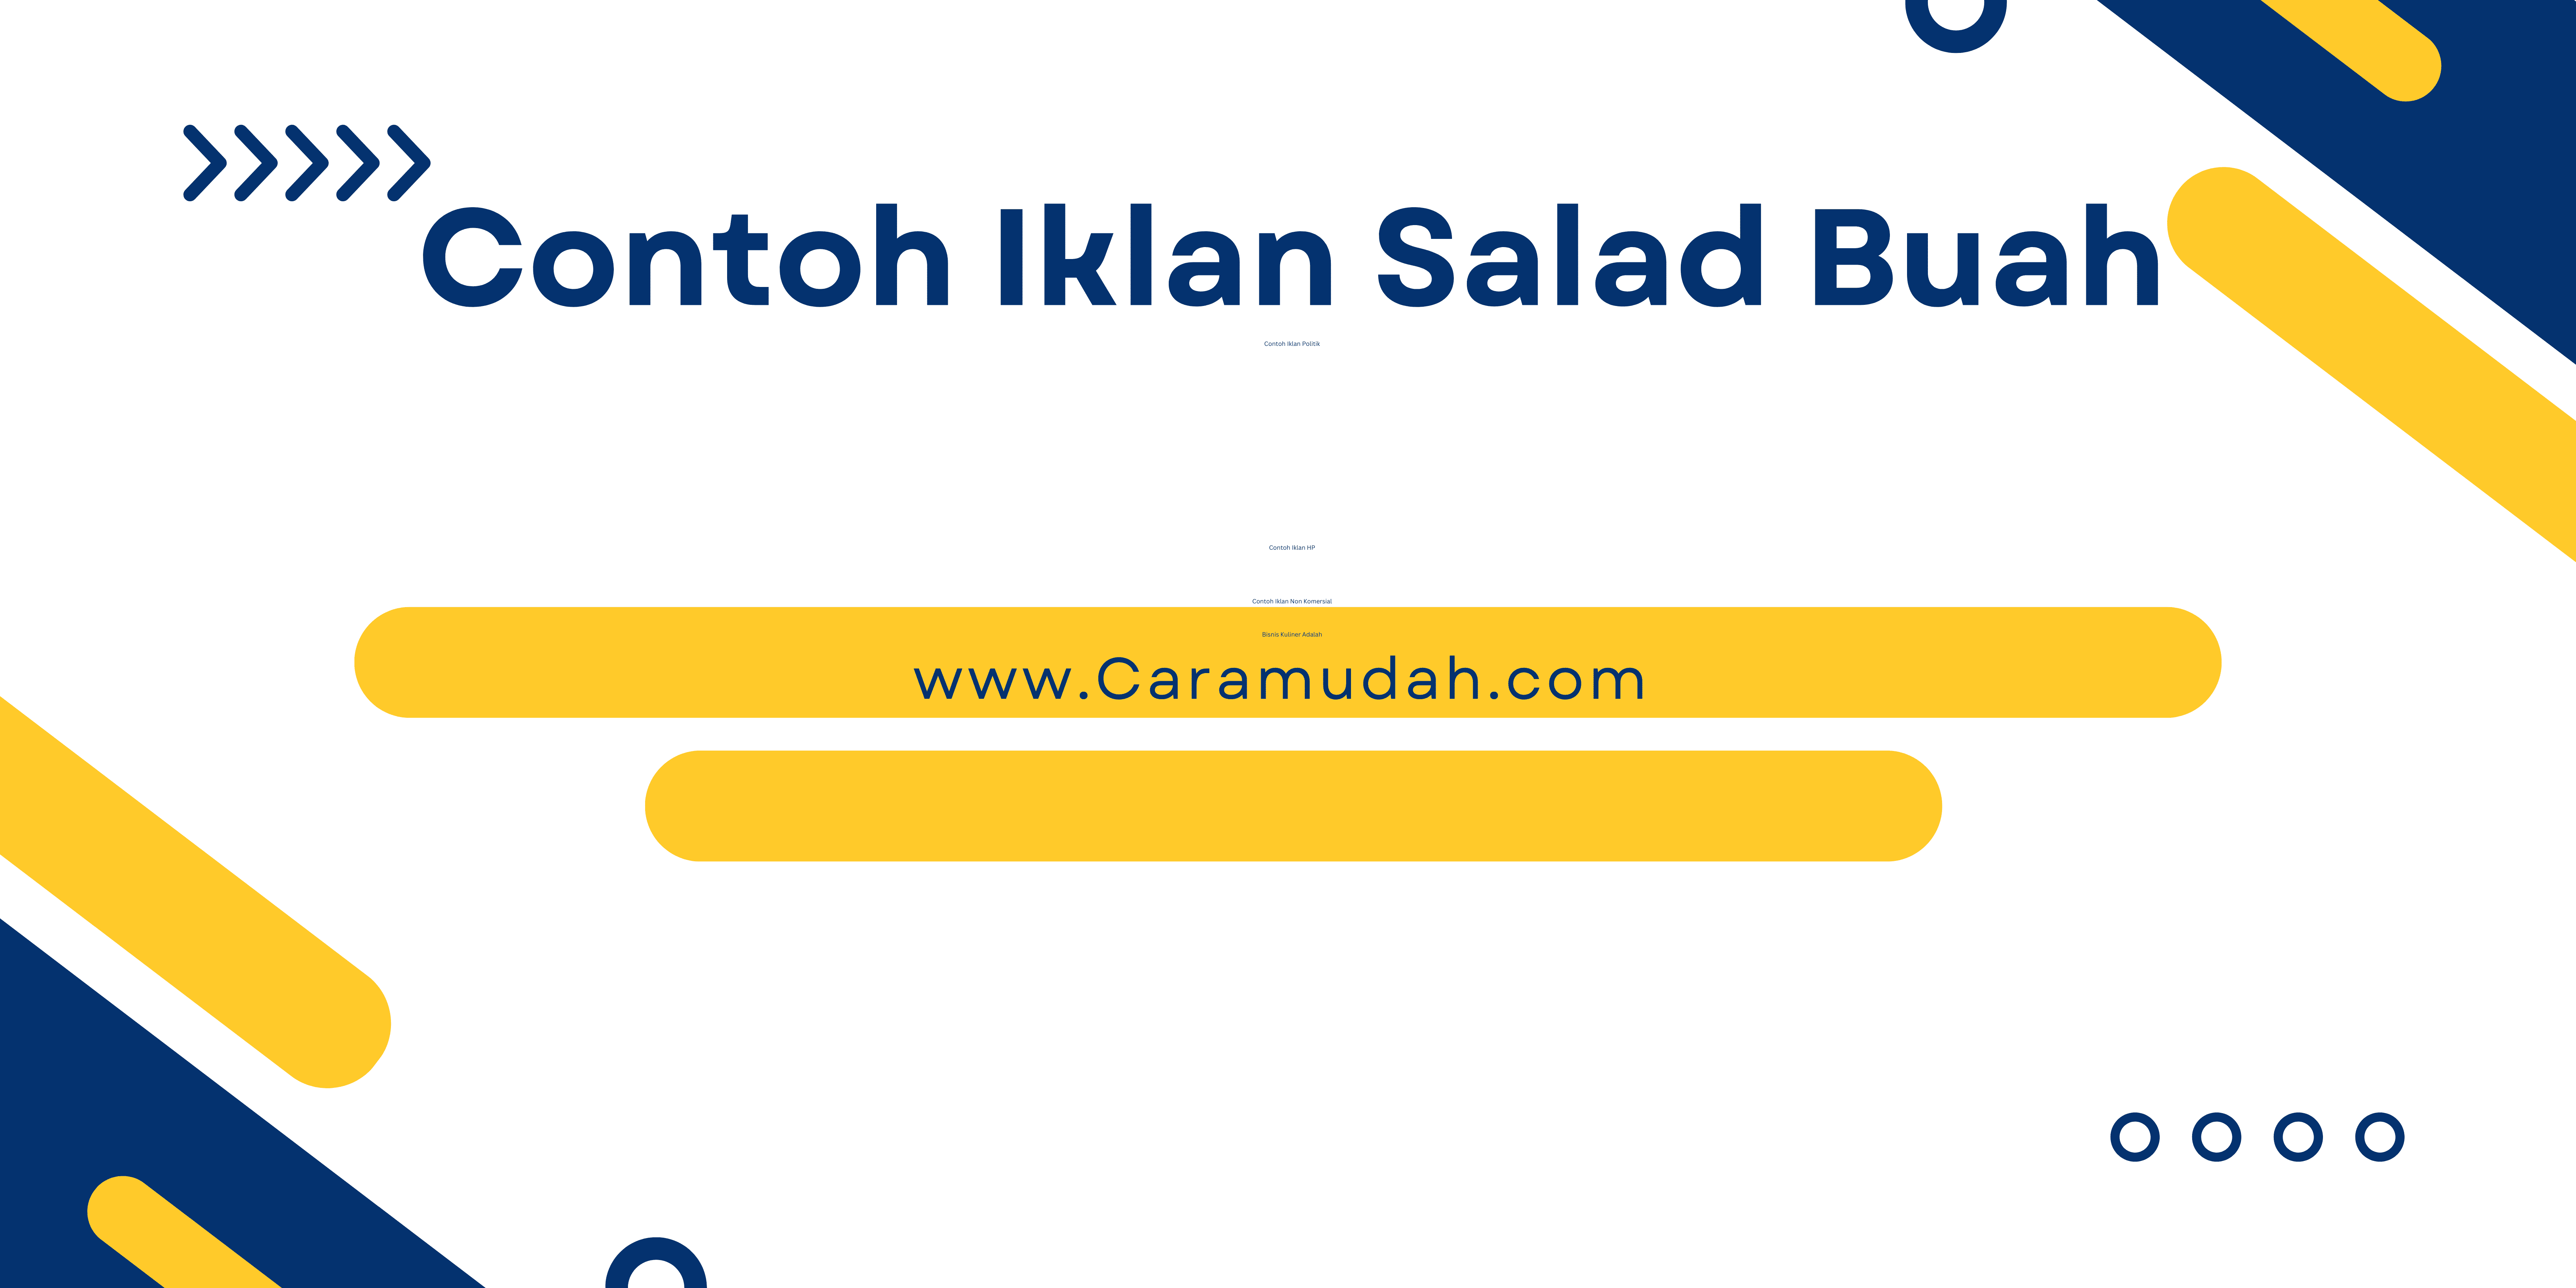 Contoh Iklan Salad Buah